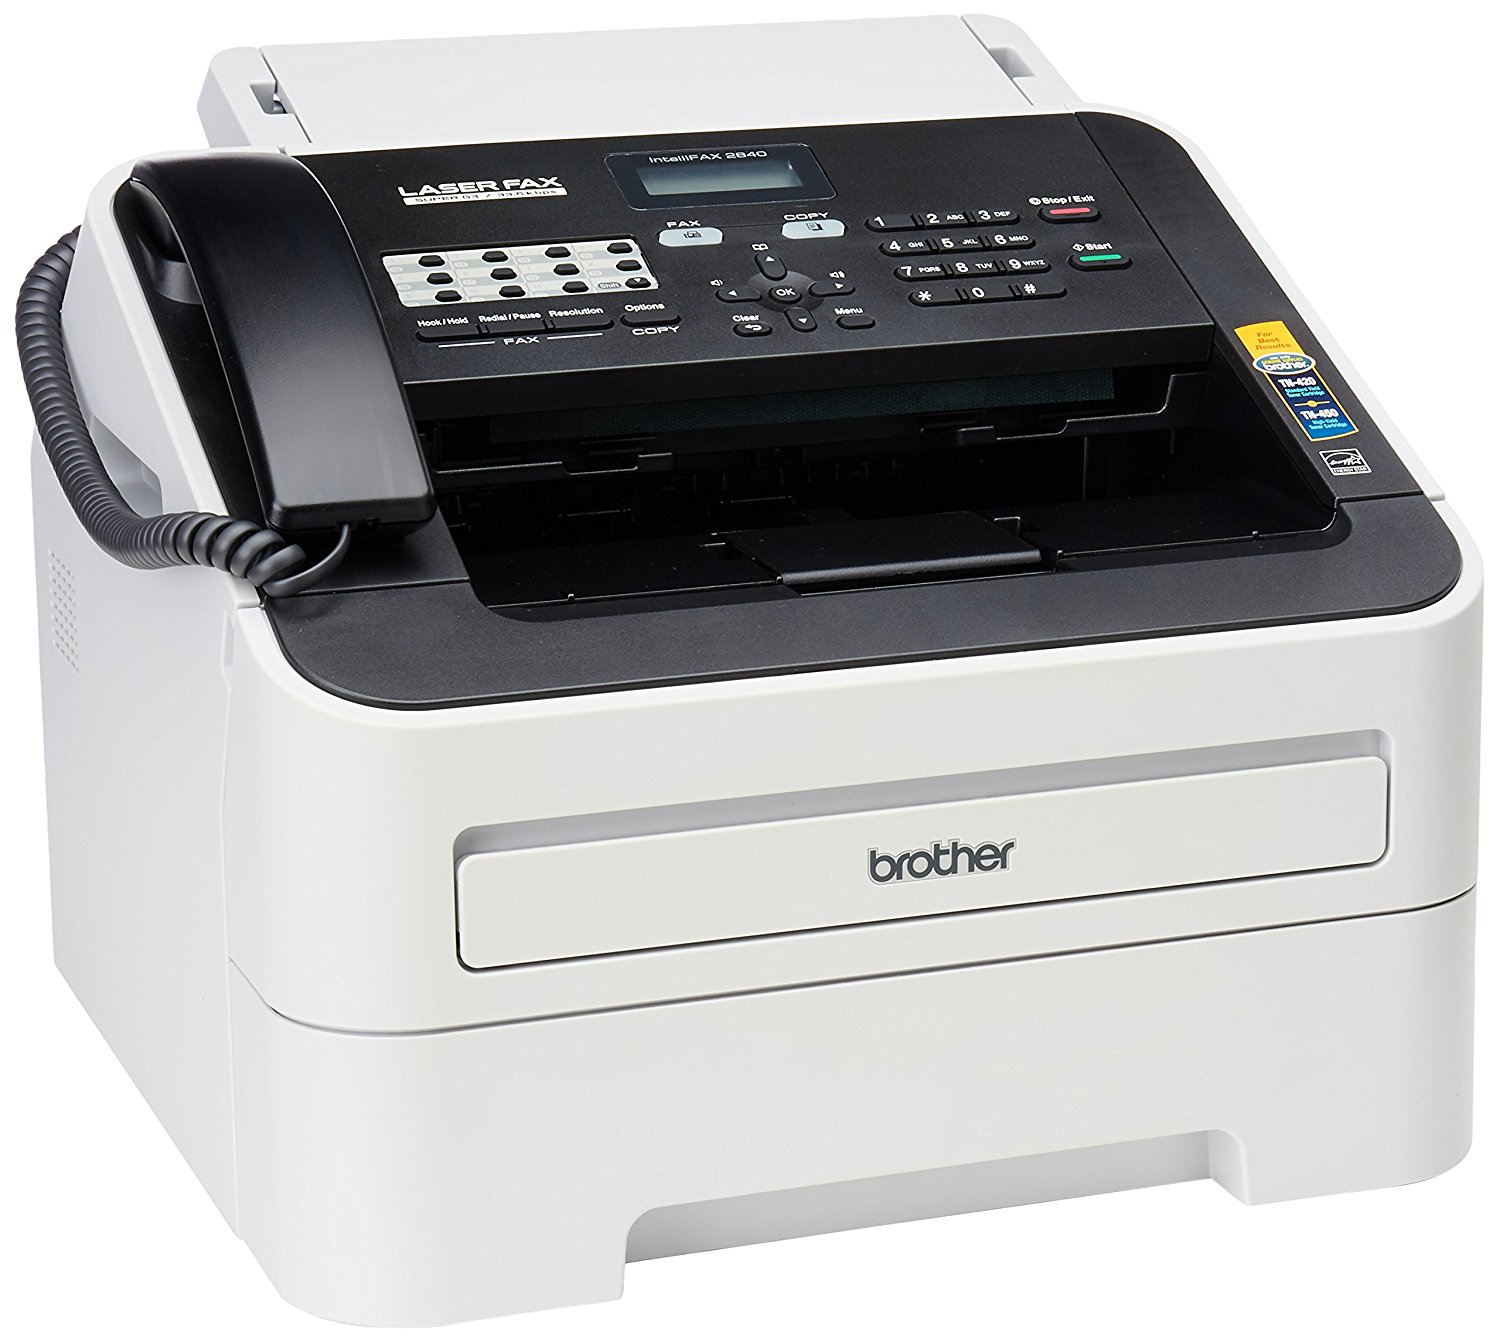 Brother Printer طابعة Brother FAX-2840 عالية السرعة أحا...